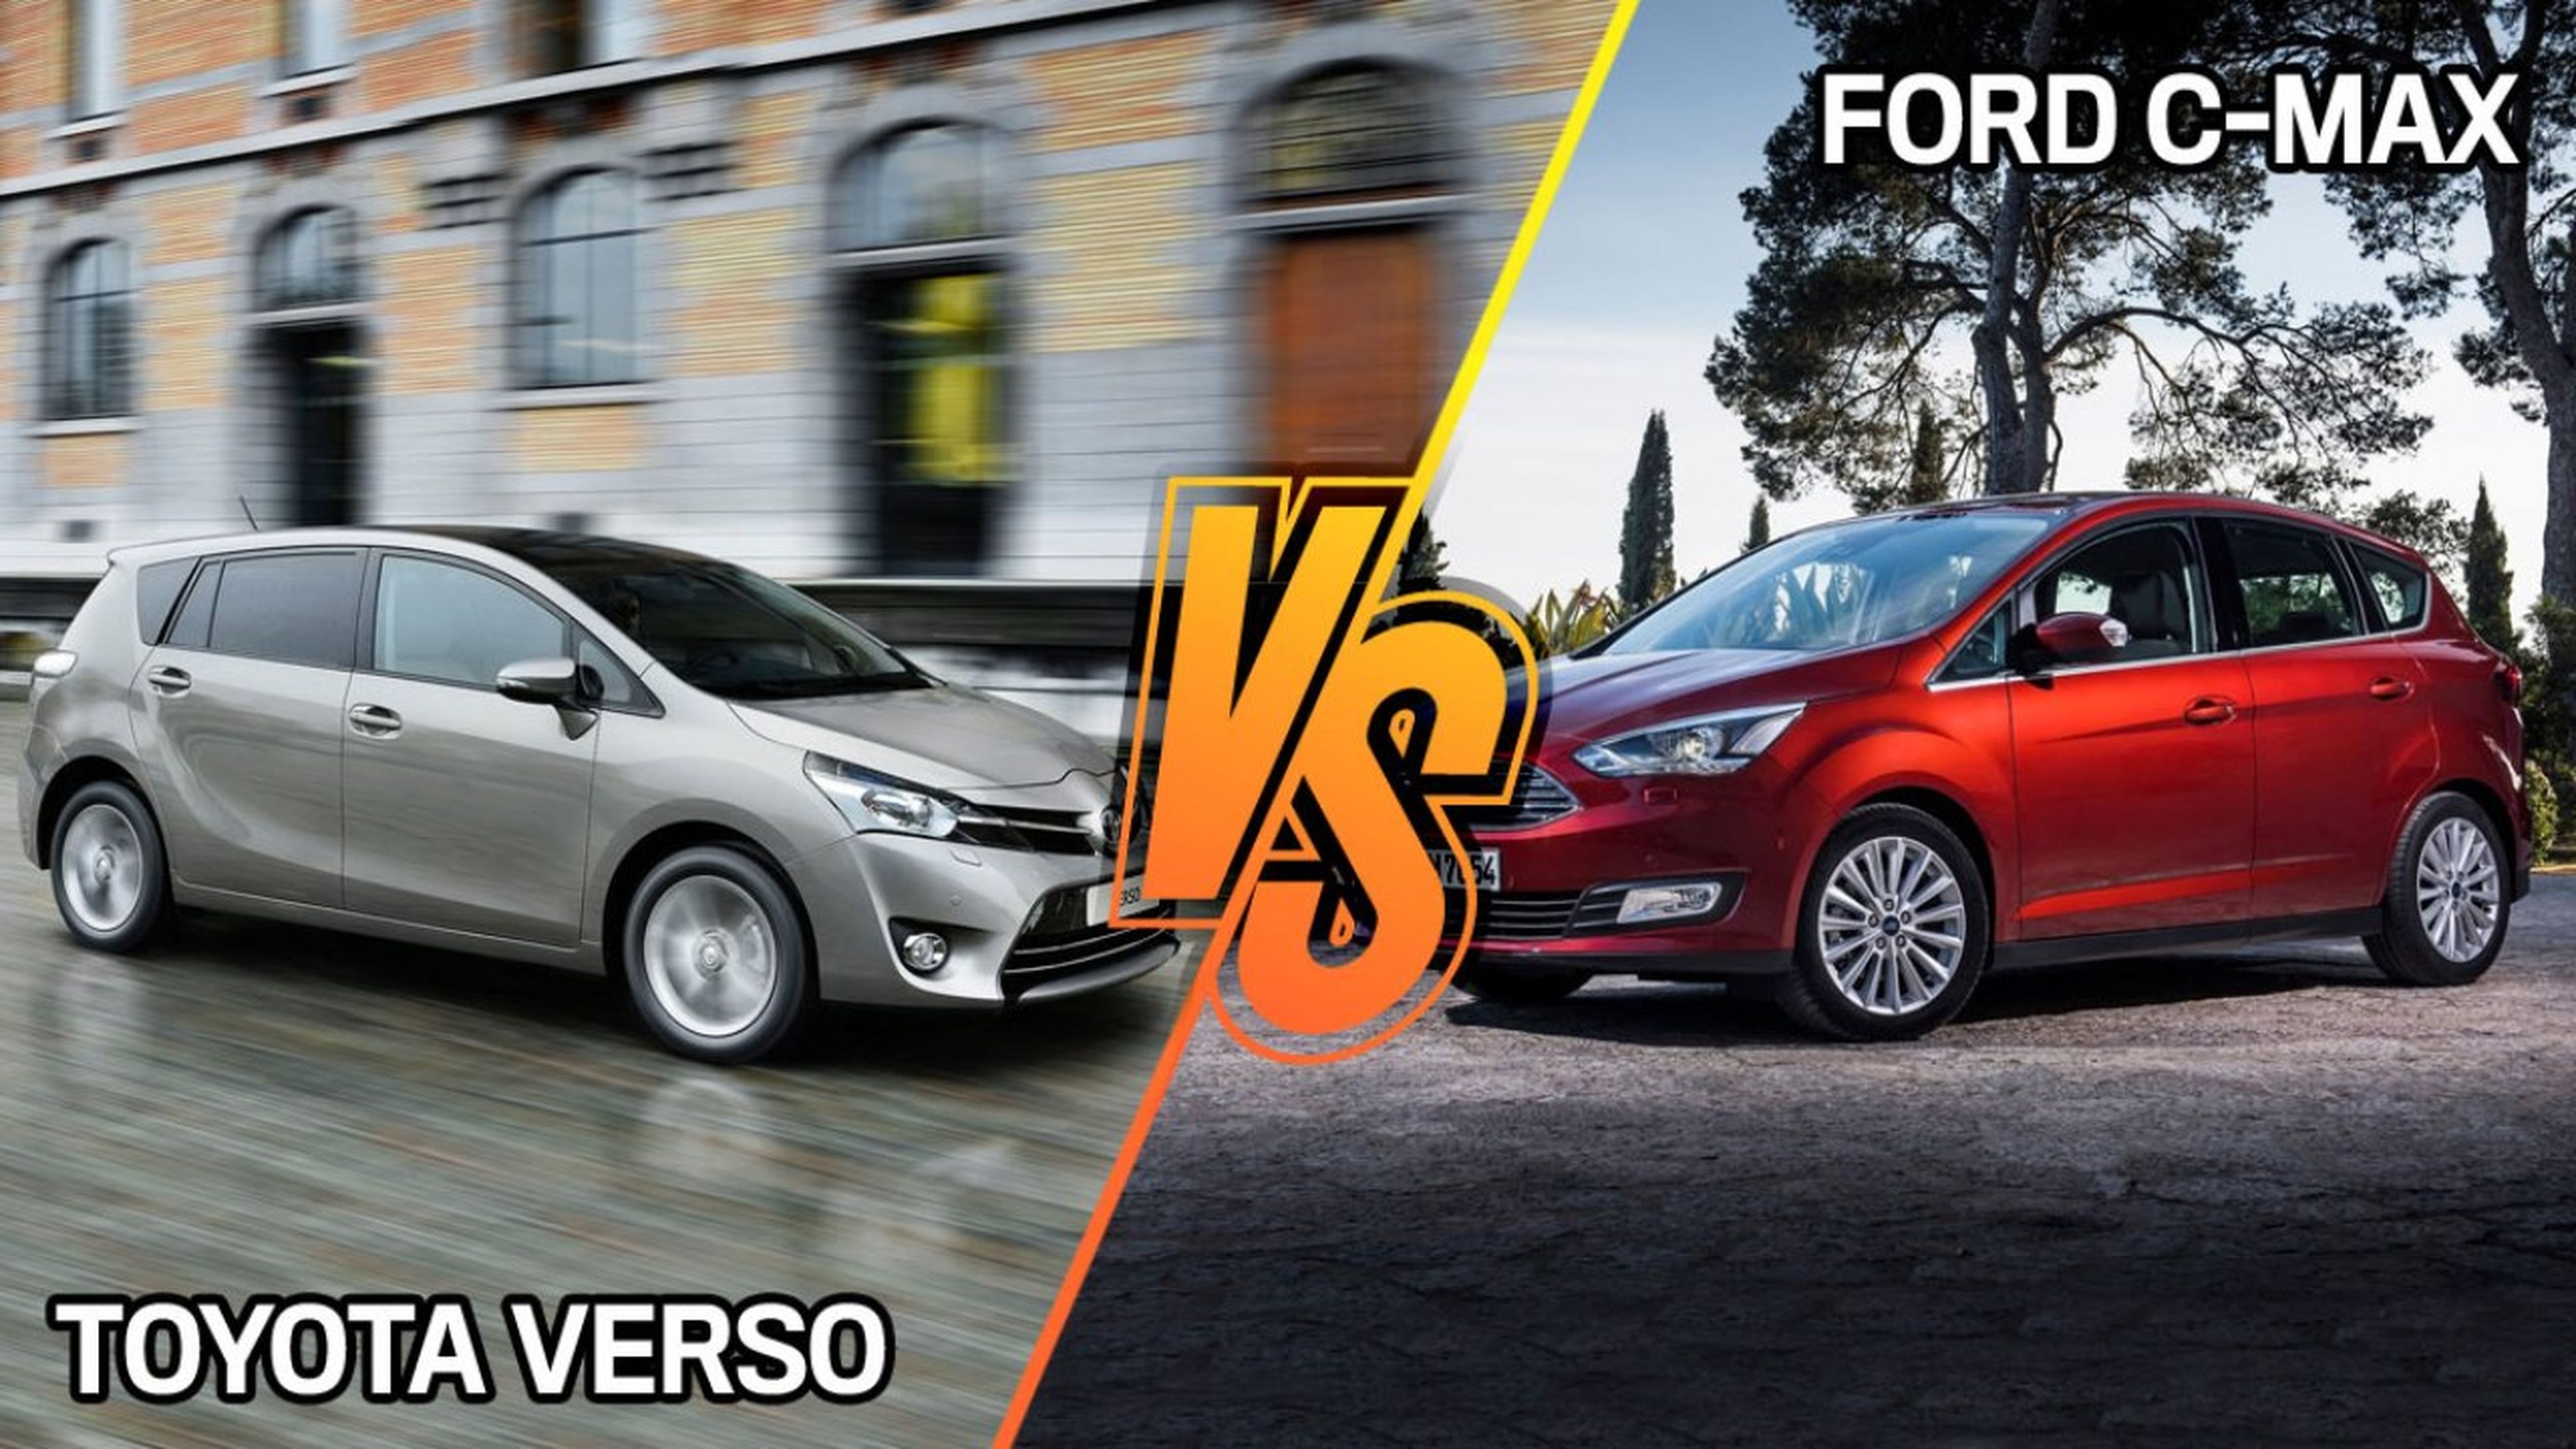 Toyota Verso vs Ford C-Max